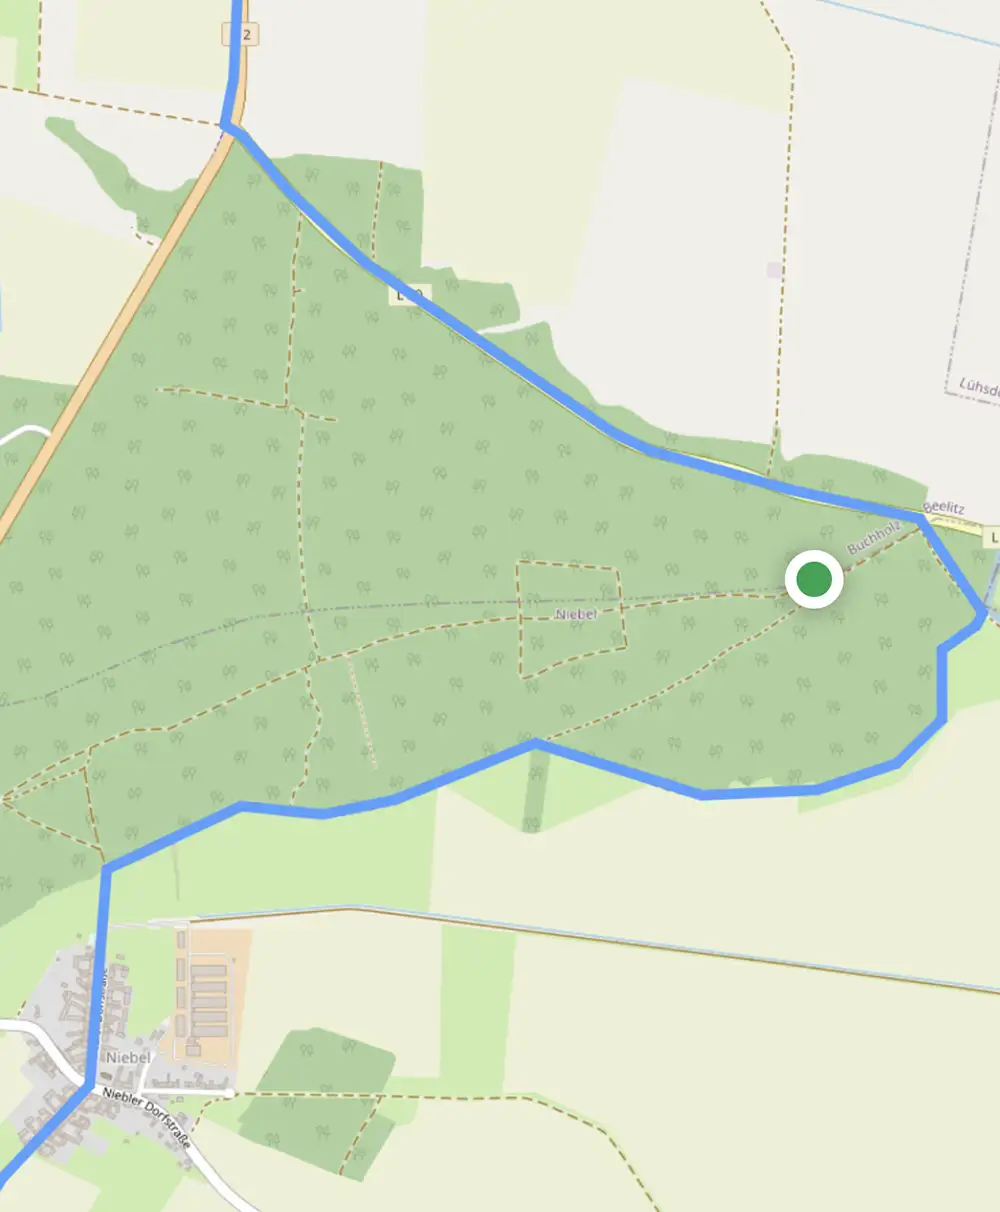 Kartenausschnitt mit GPS-Standort, der neben der blauen Routen-Linie ist